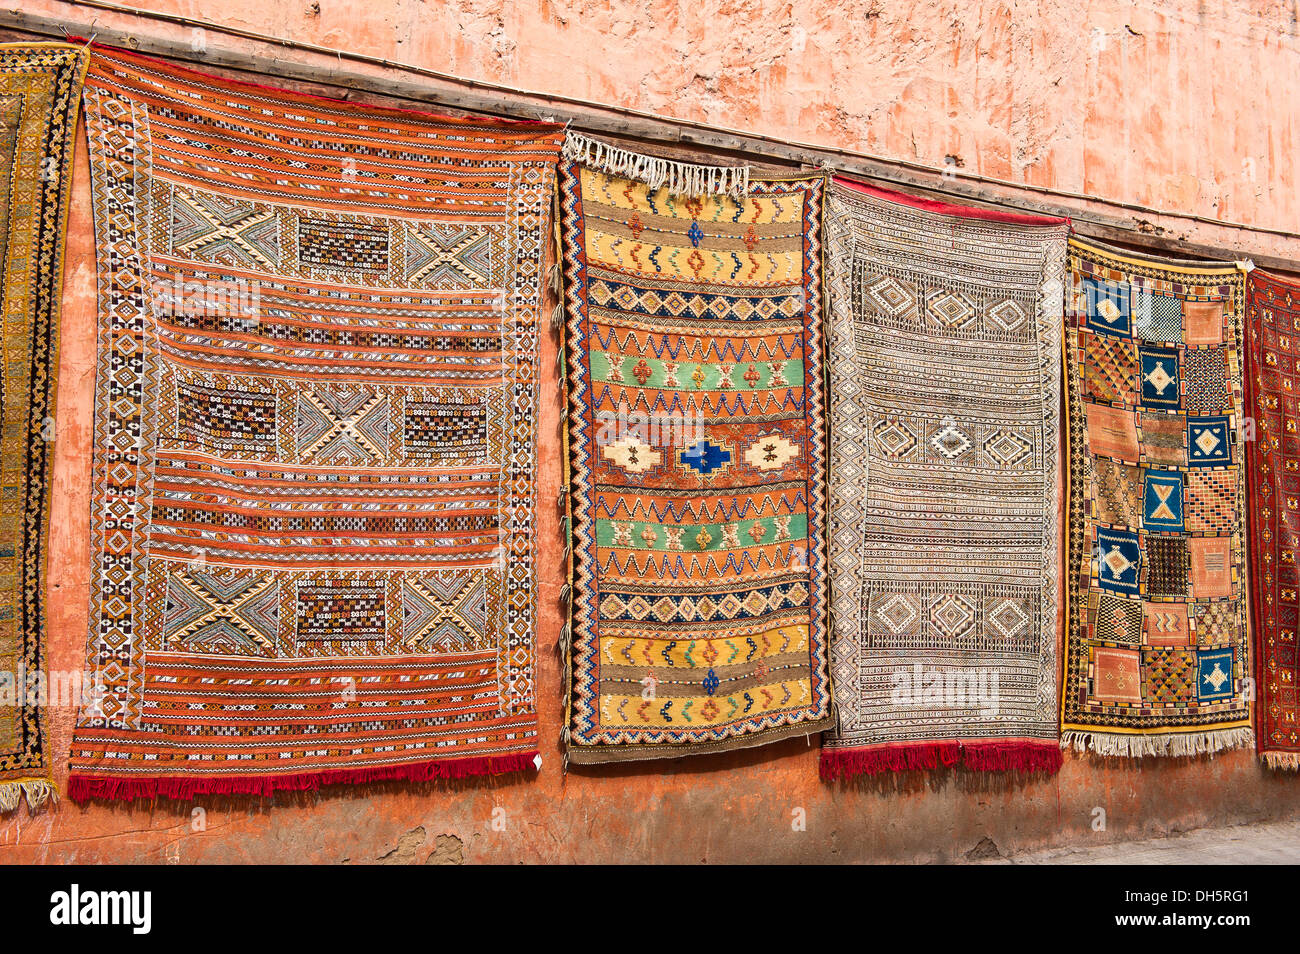 Des tapis avec des symboles arabes et berbères et les schémas, suspendu à une façade à vendre, Marrakech, Maroc, Afrique Banque D'Images